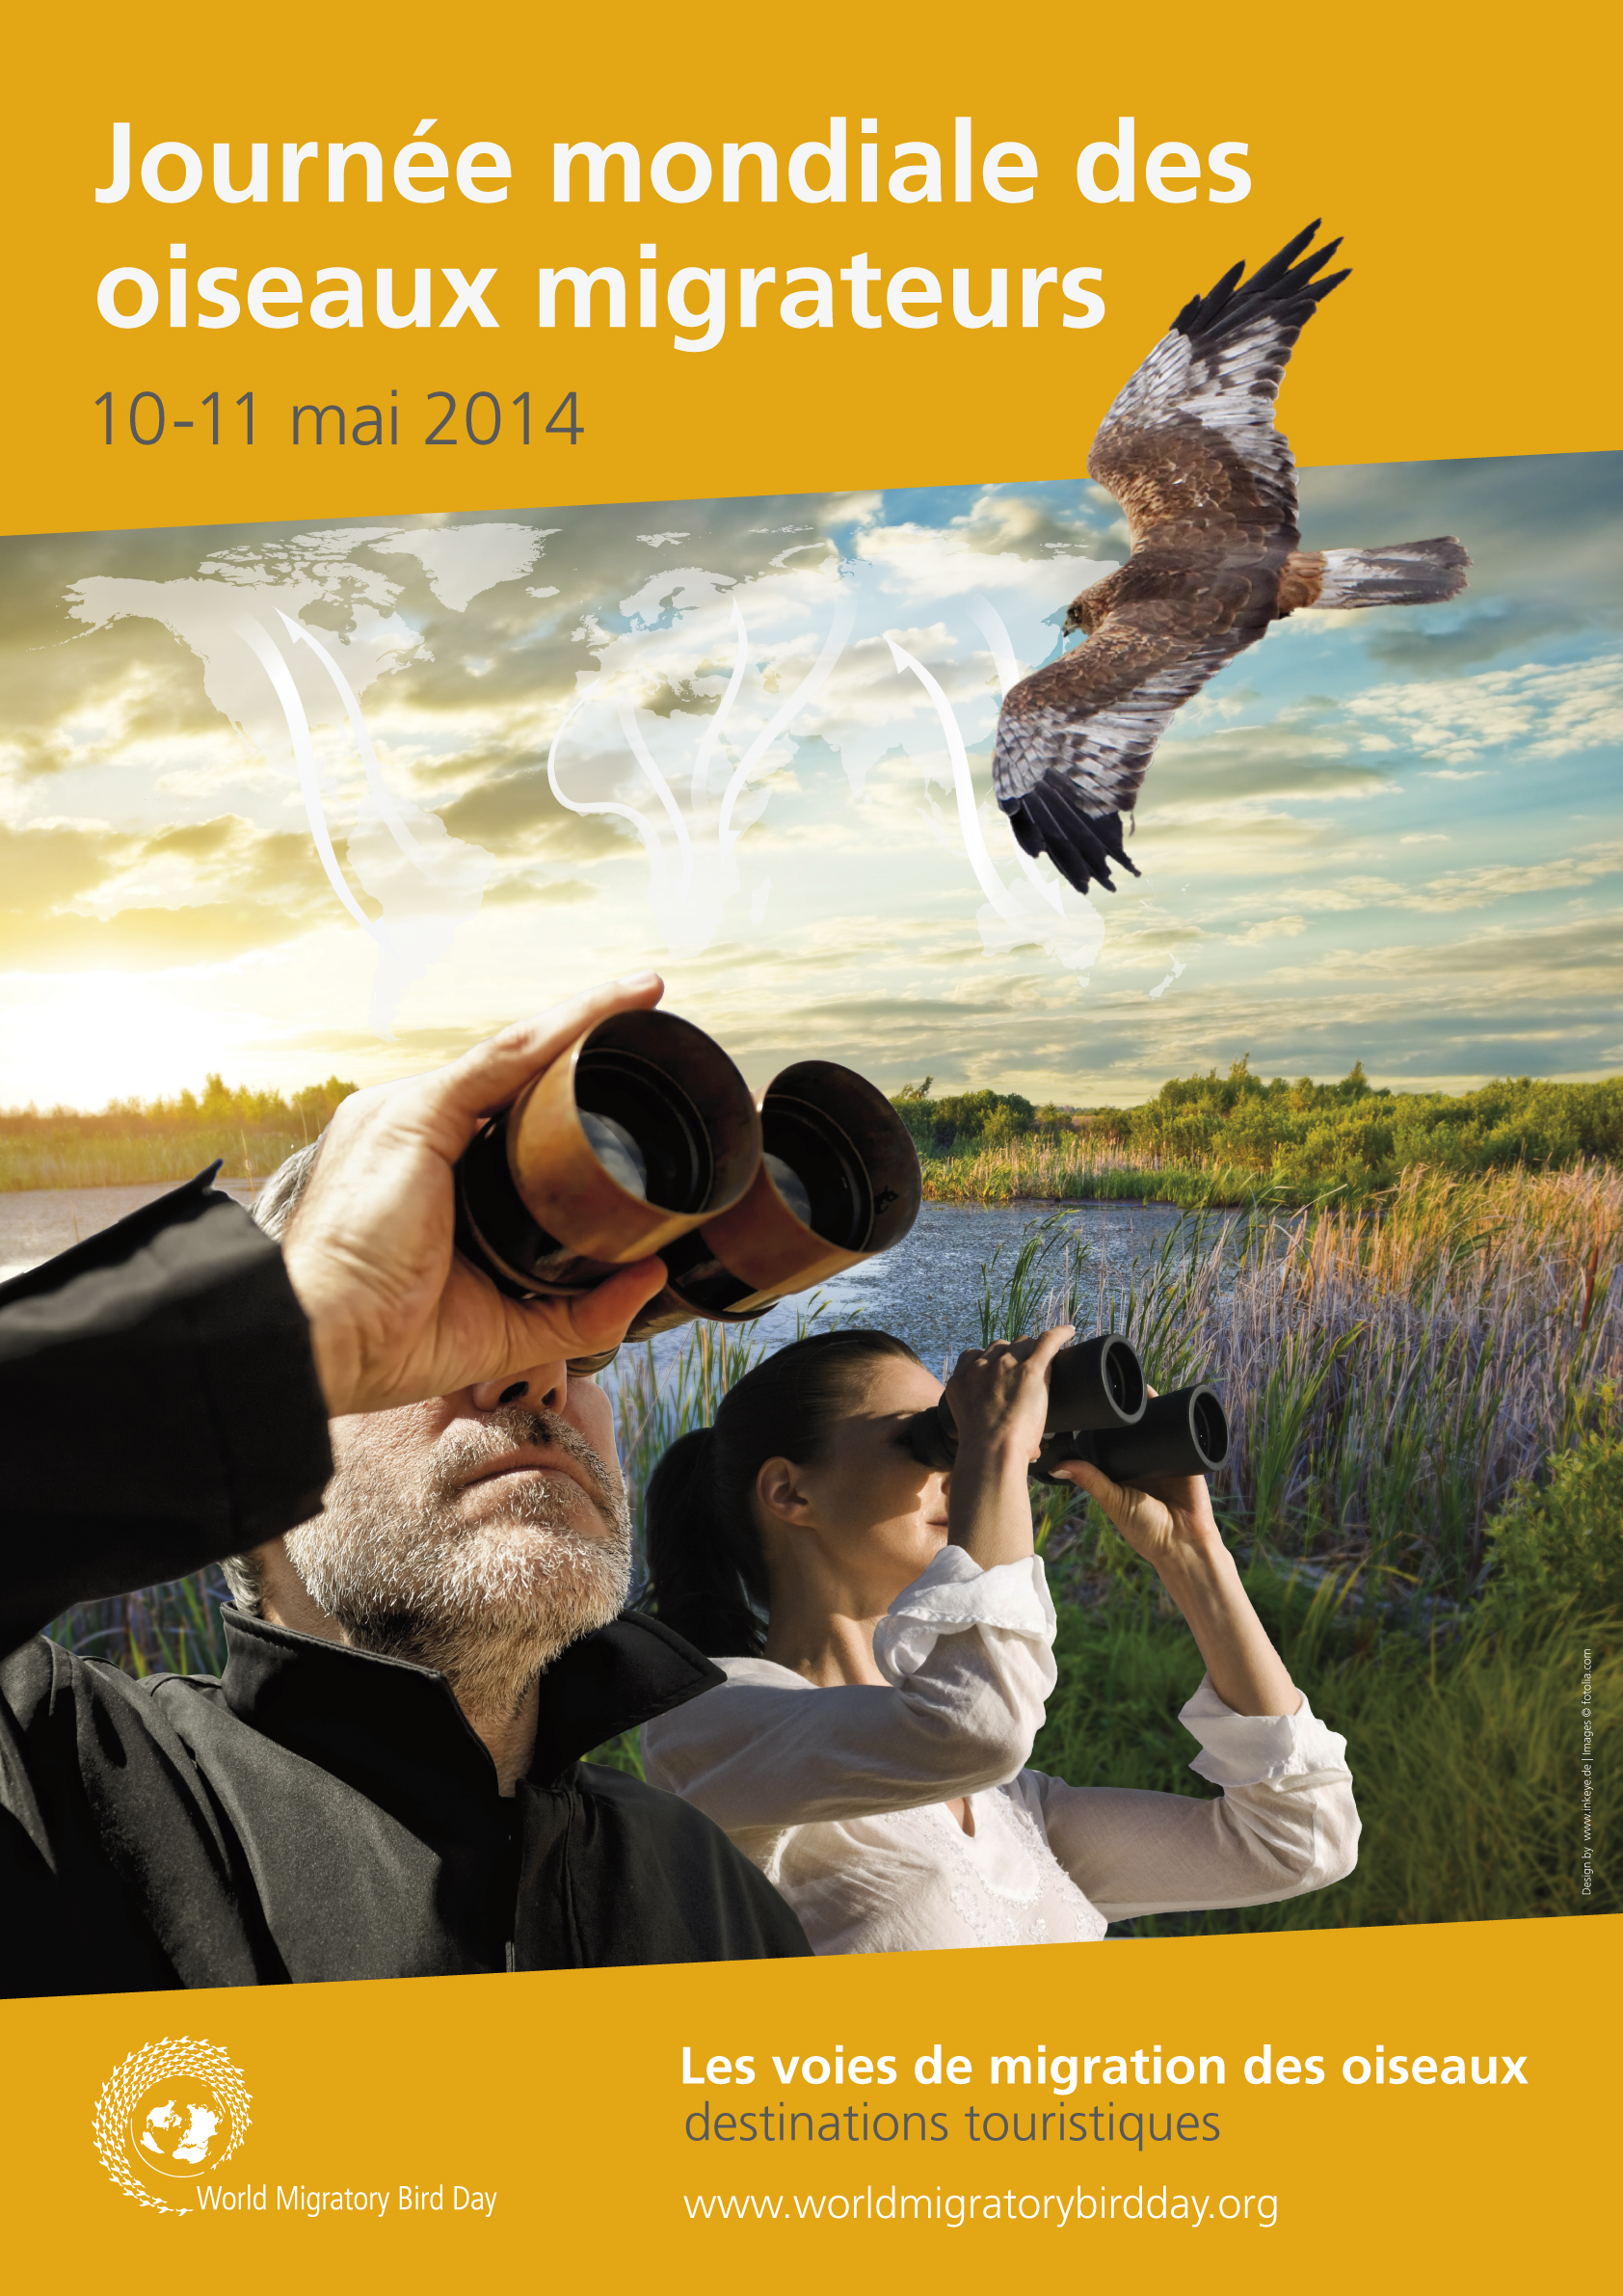 La Journée mondiale des oiseaux migrateurs 2014 met en vedette une initiative pionnière de tourisme durable